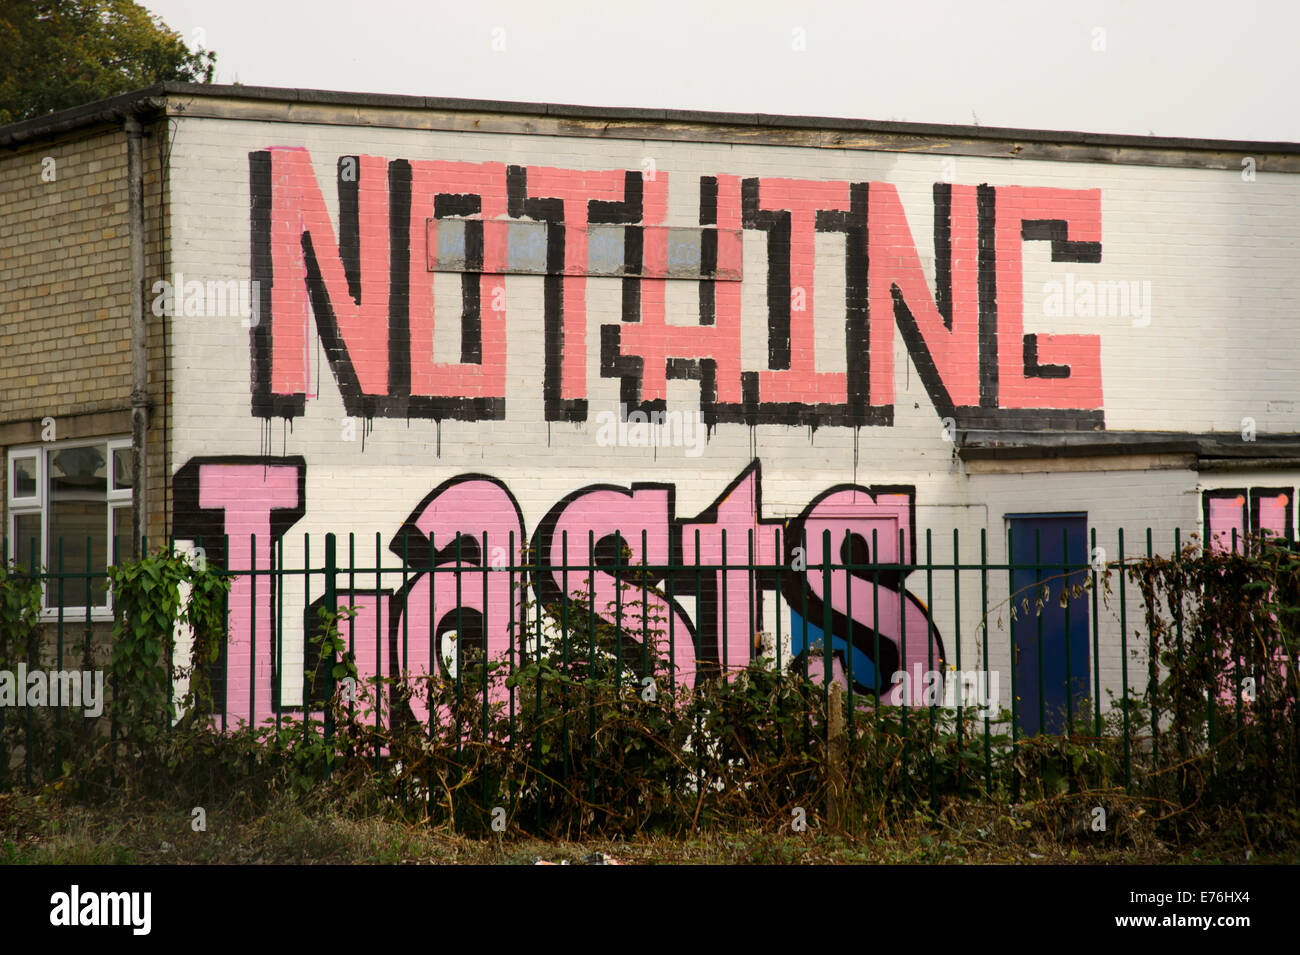 Rien ne dure sur graffiti bâtiment abandonné Banque D'Images